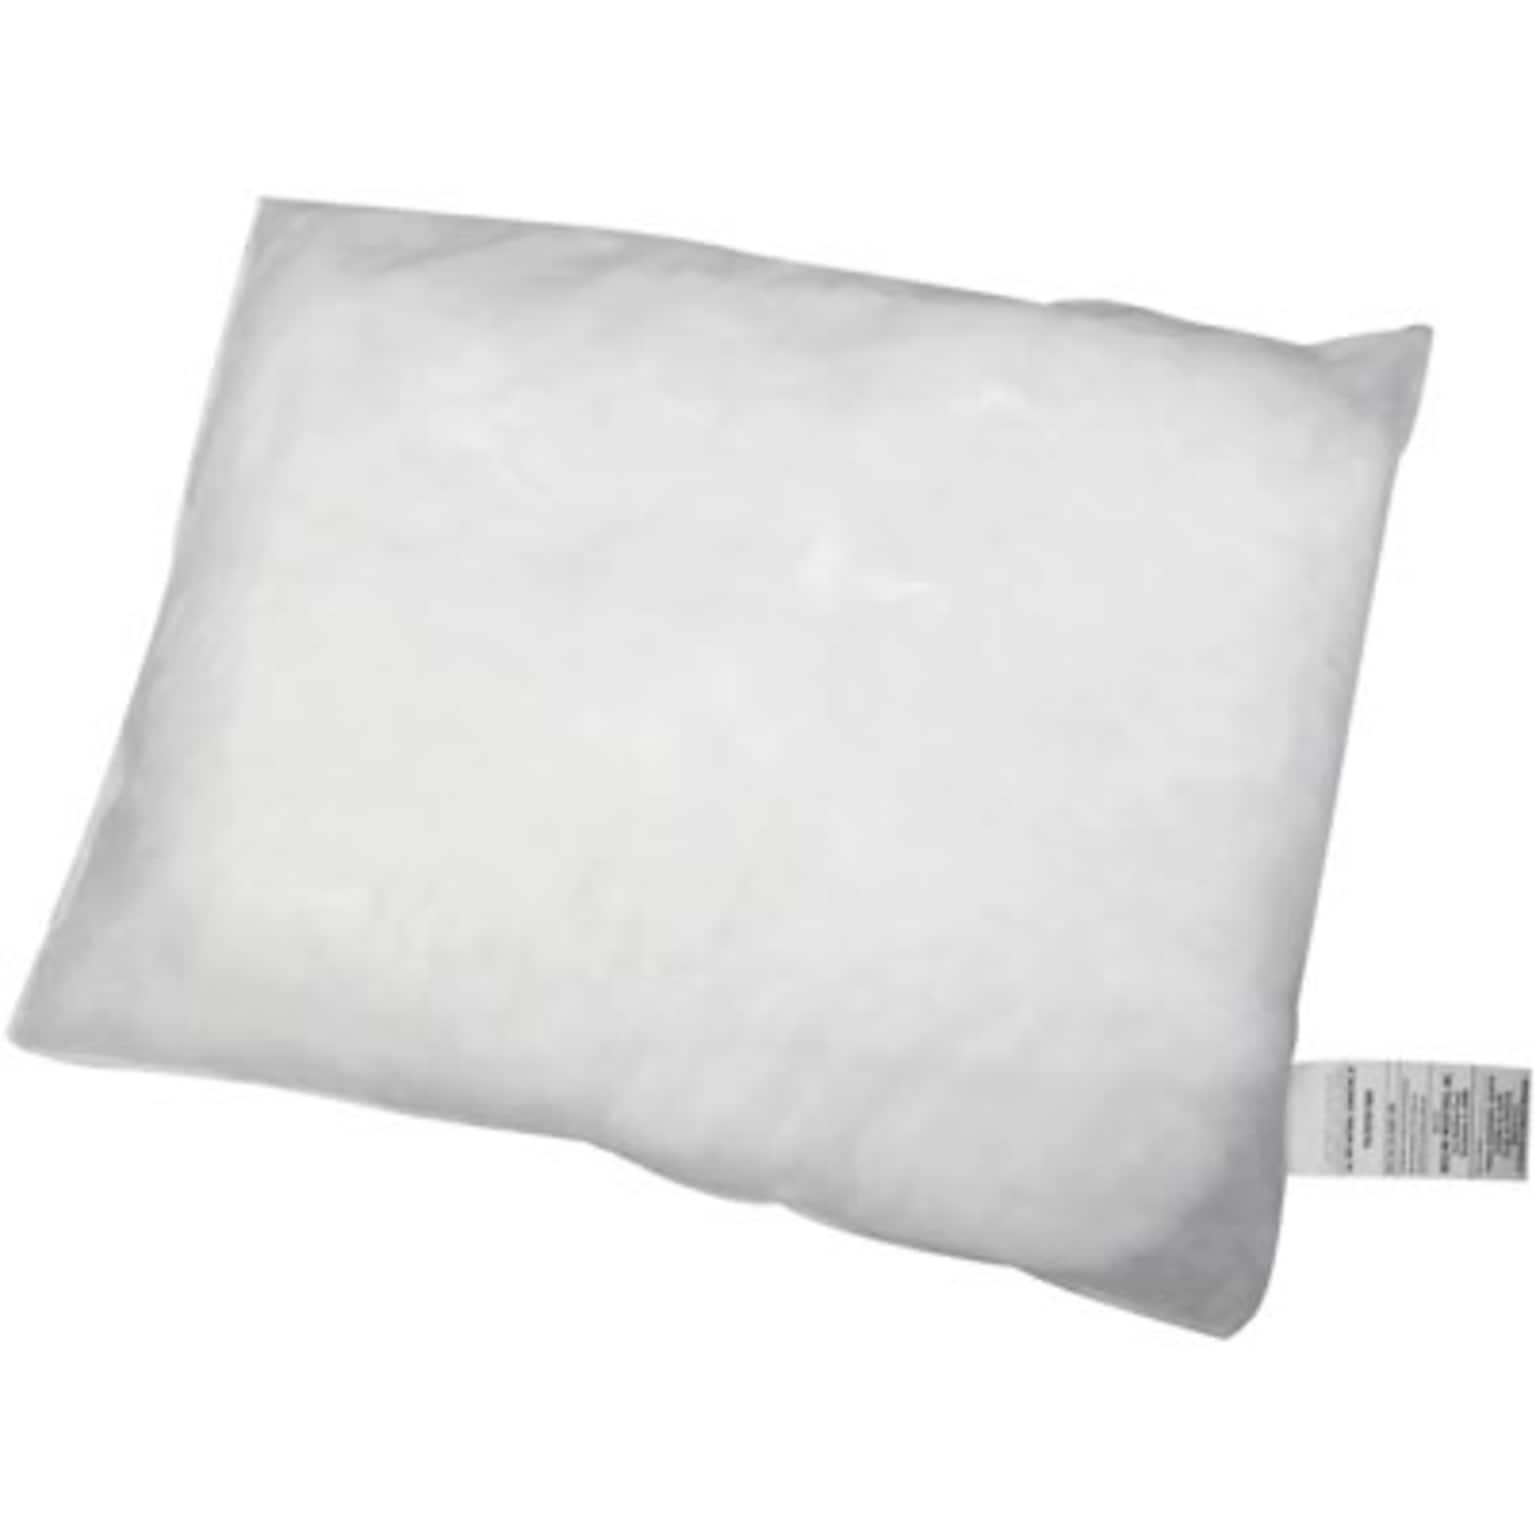 Medline Disposable Pillows; 18x24, 12/Carton (NON24390)